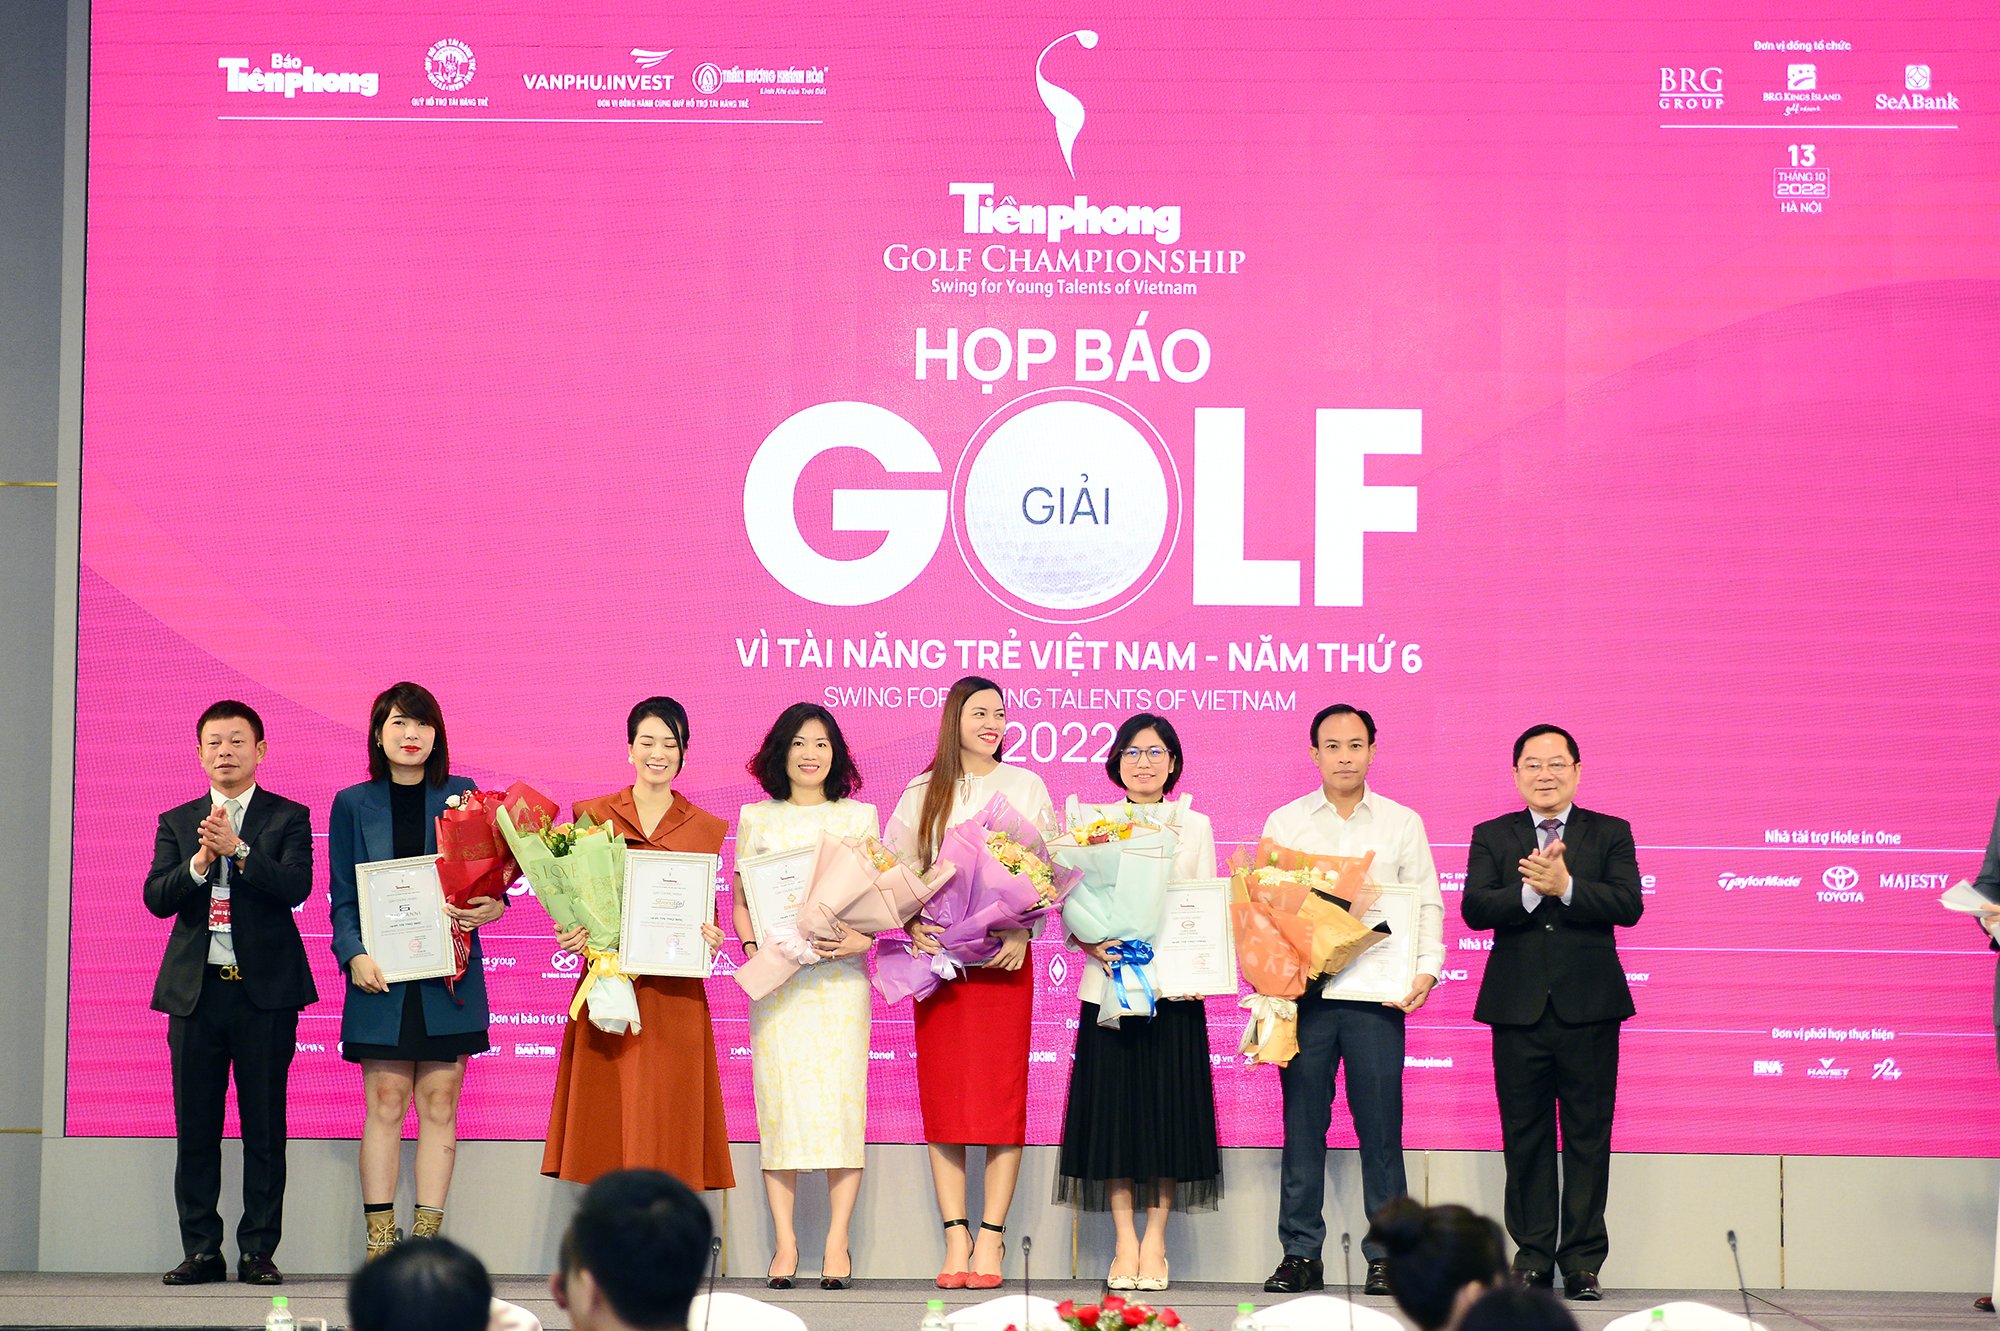 Hoa hậu Đỗ Thị Hà thật thà chia sẻ 1 điều khi làm đại sứ Tiền Phong Golf Championship 2022 - Ảnh 4.